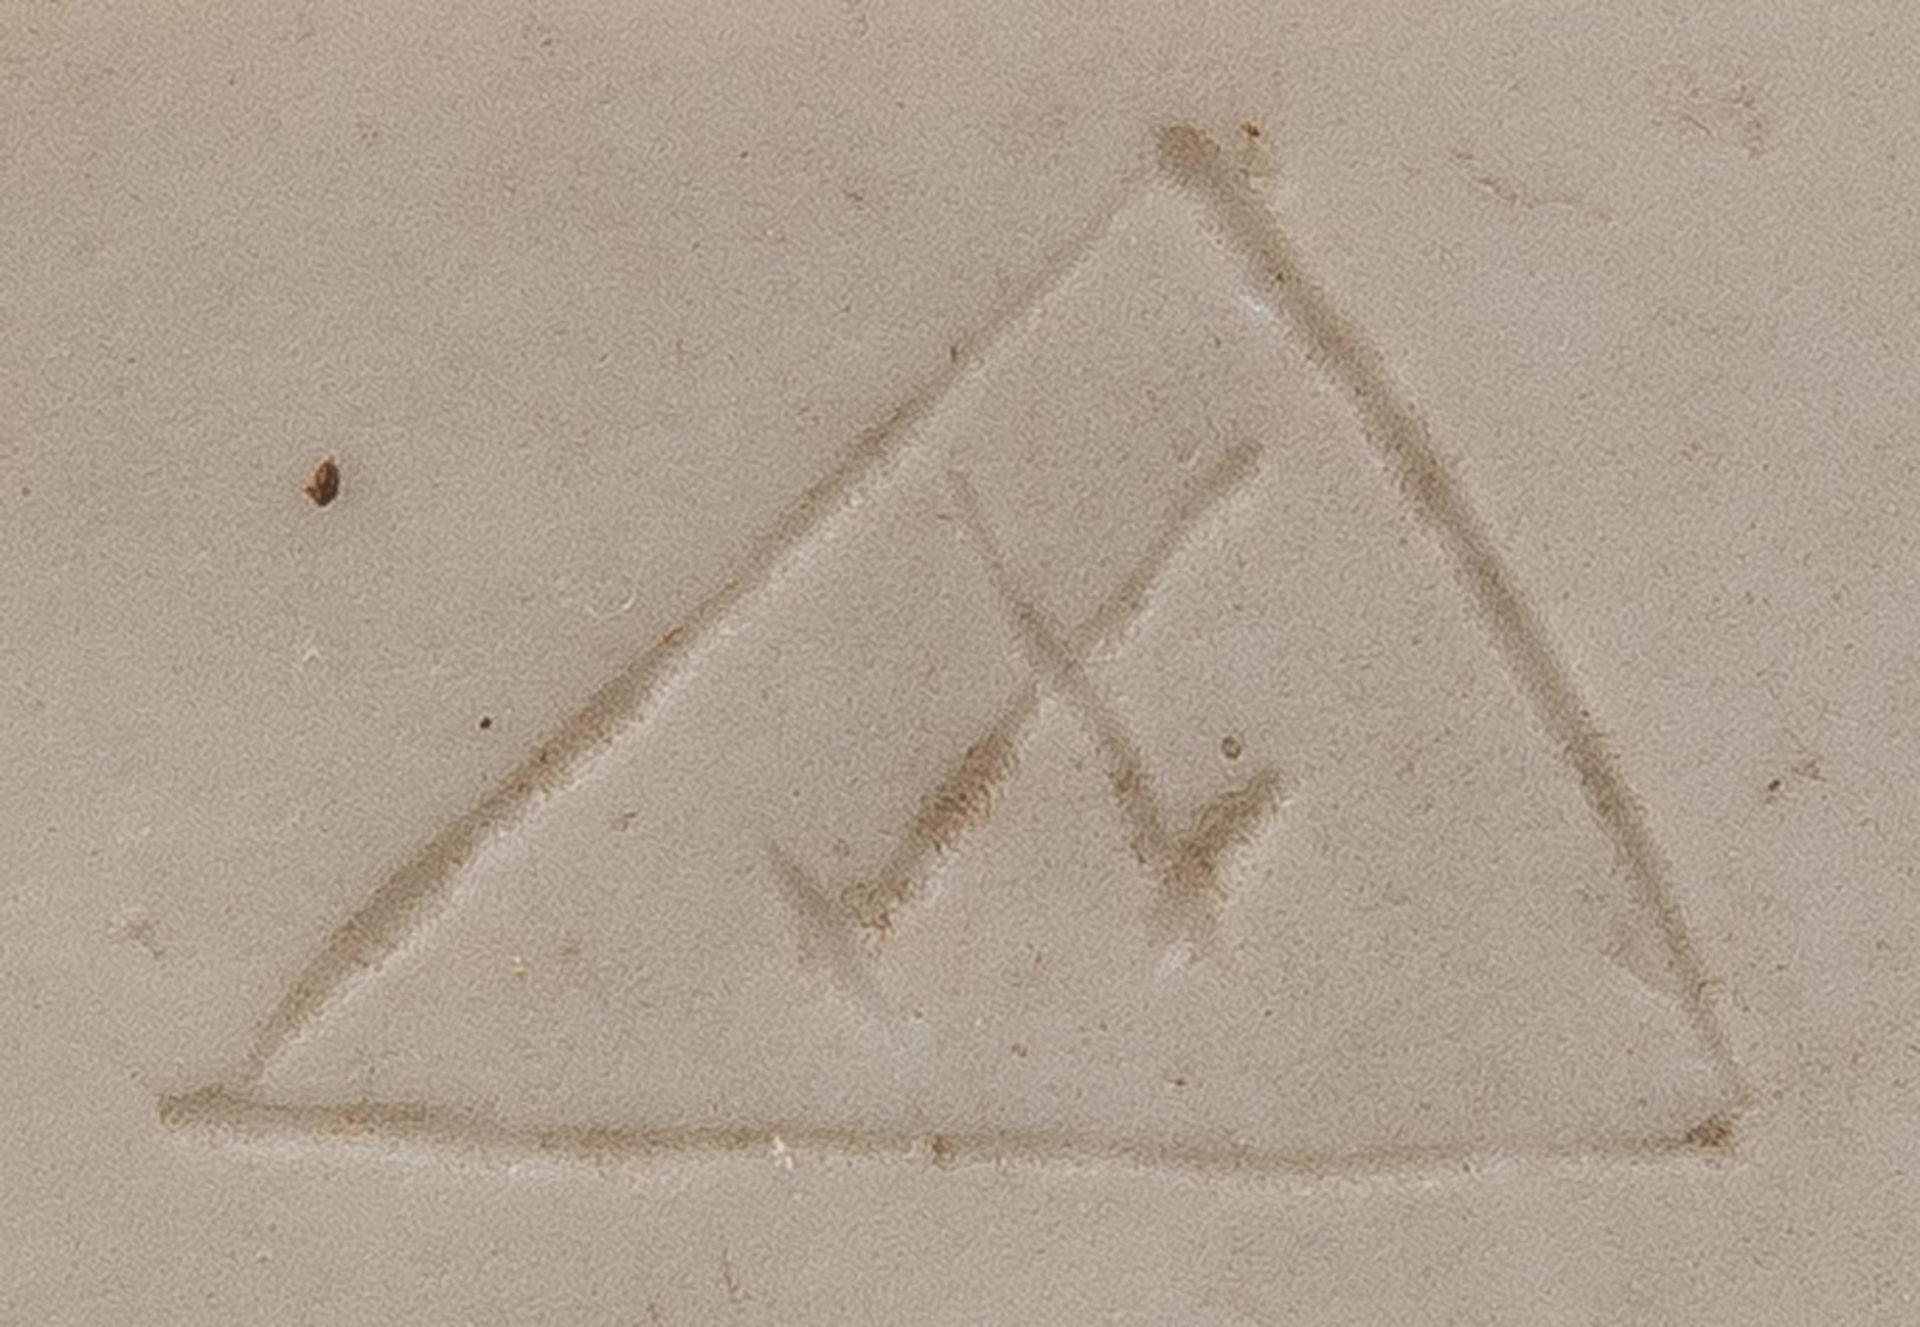 Tanzendes Mädchen. Meissen 1815. Weißes Bisquitporzellan, am Boden eingepresste Schwertermarke, - Image 2 of 3